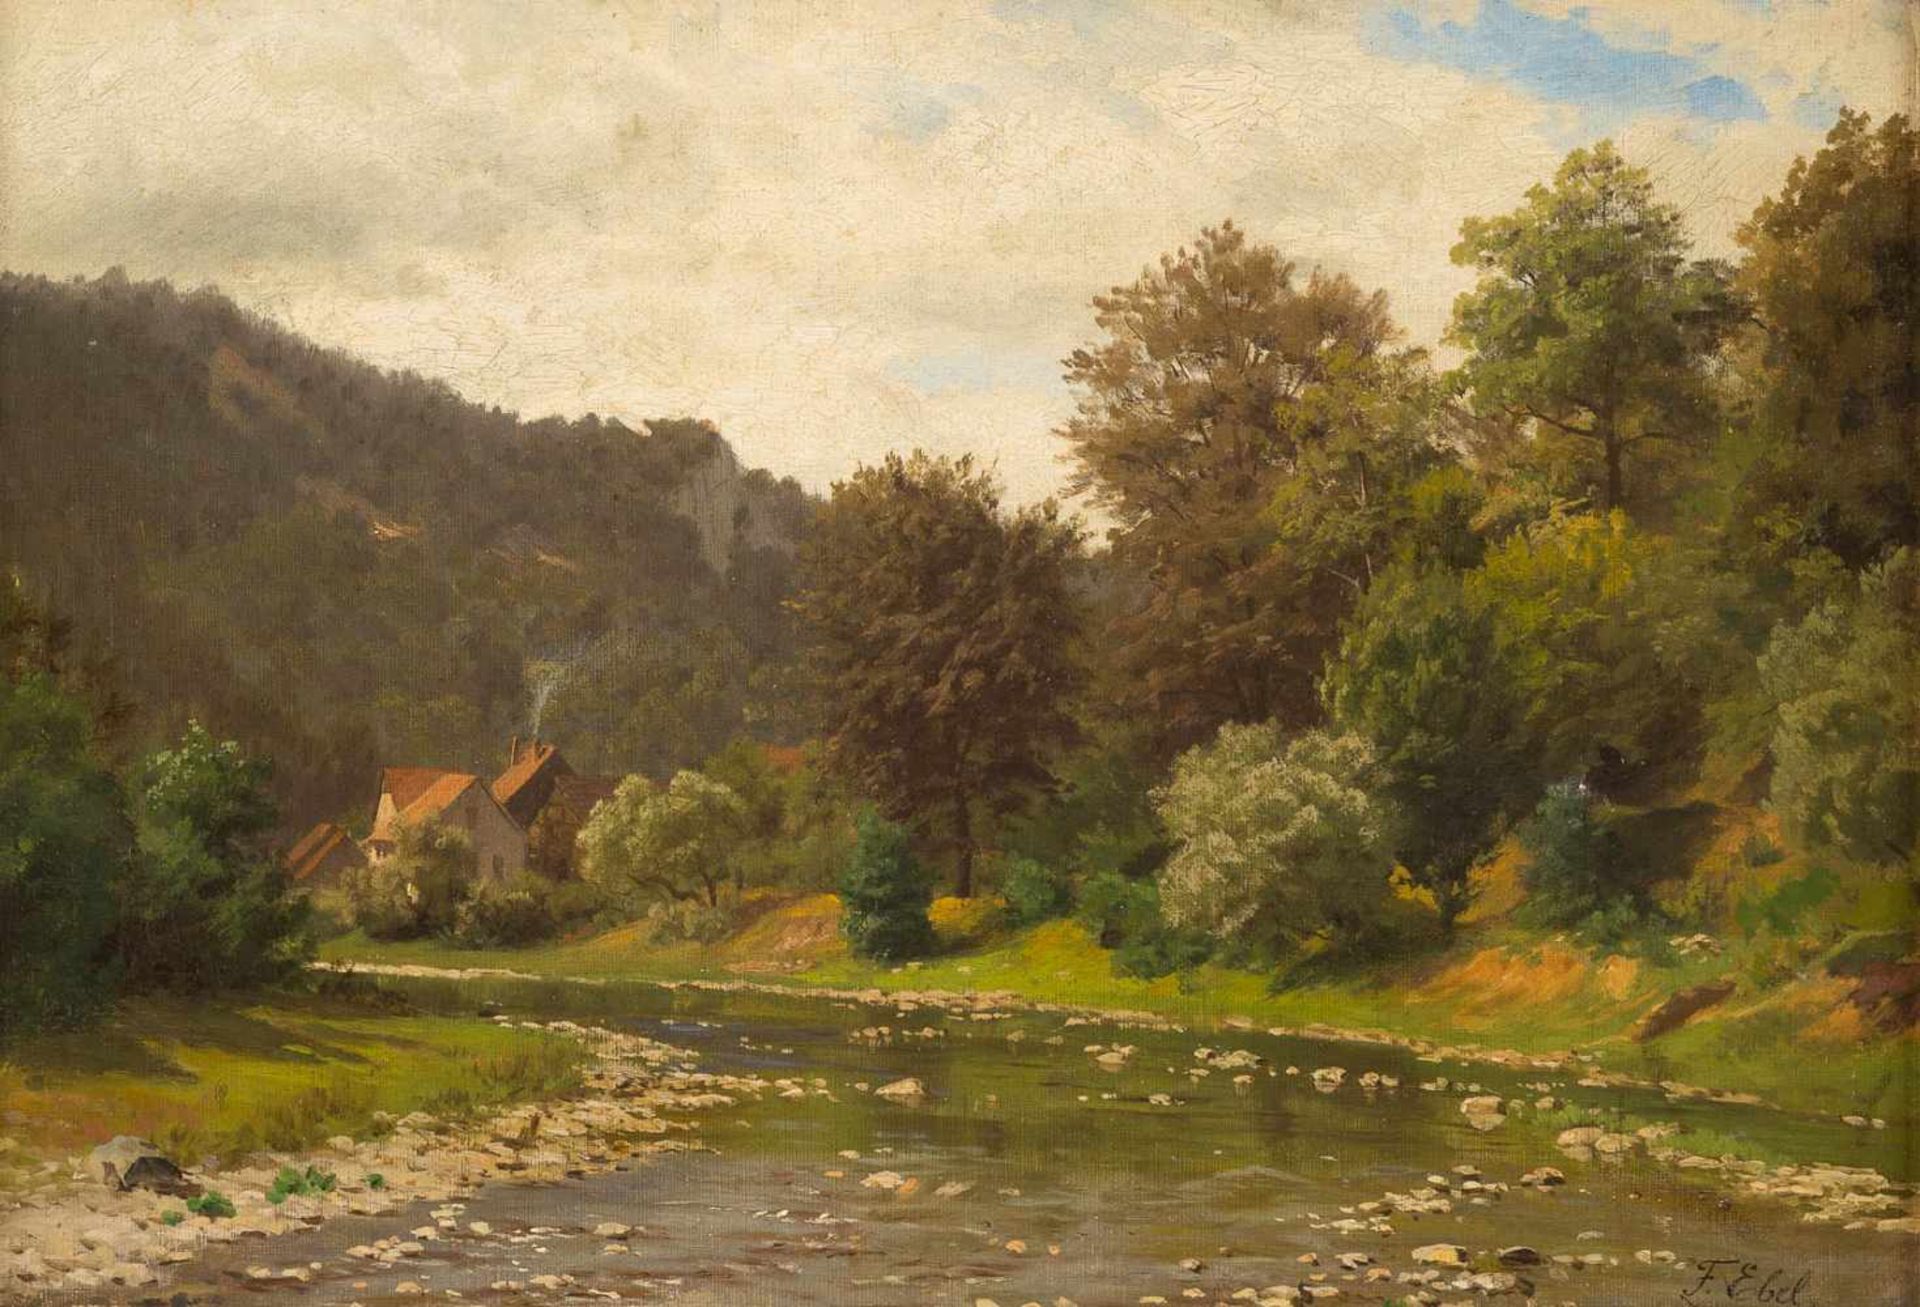 FRITZ CARL WERNER EBEL1835 Lauterbach - 1895 DüsseldorfKonvolut Gemälde. Rehe auf einer Lichtung (